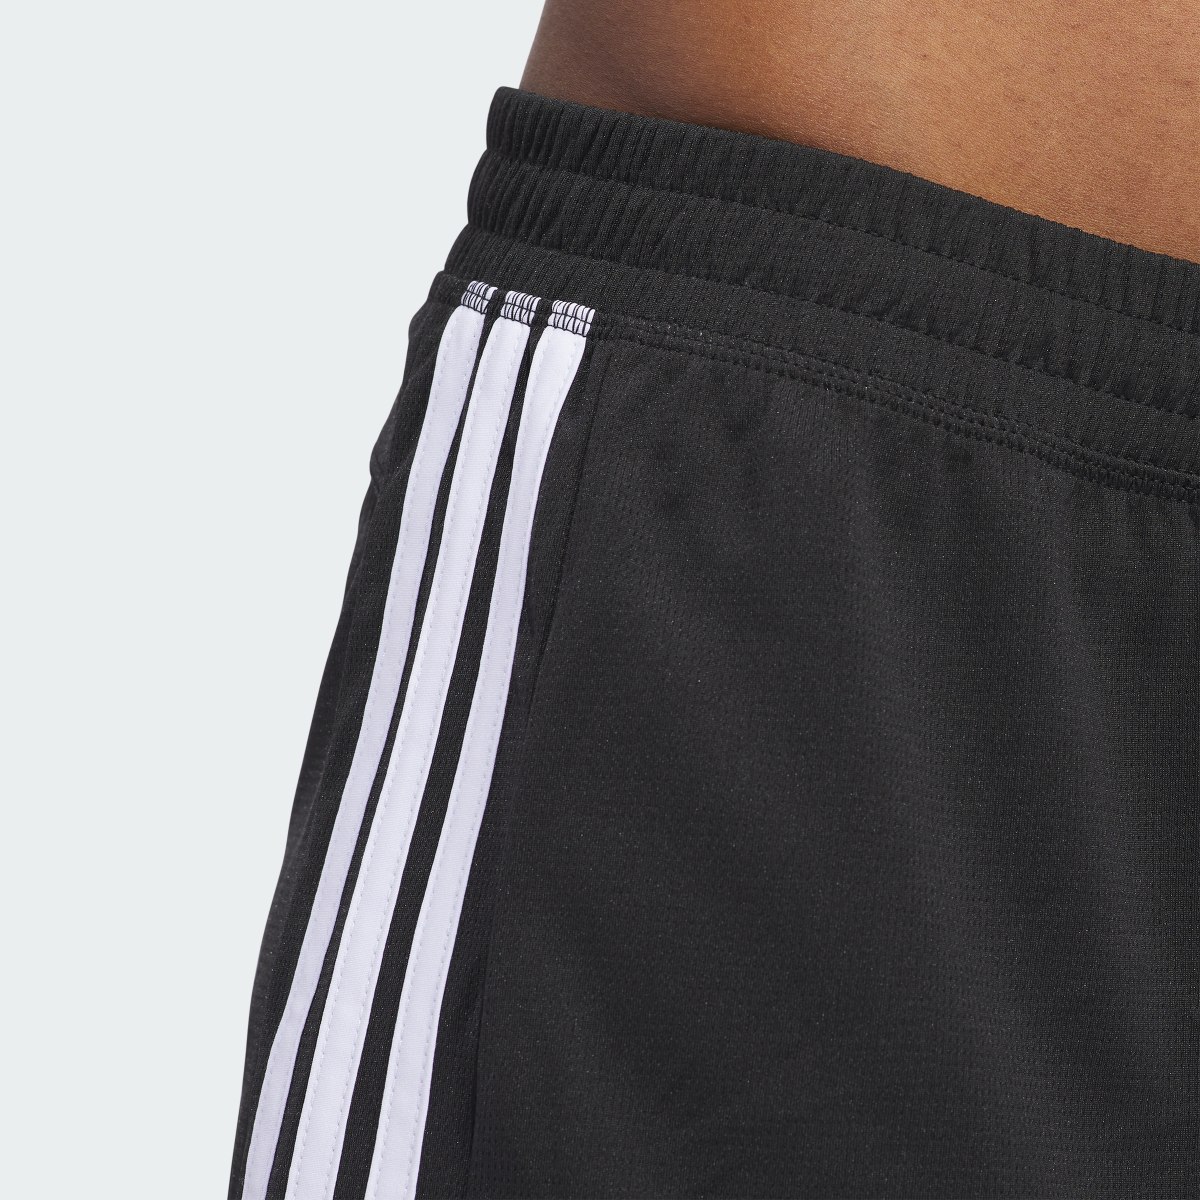 Adidas Pacer 3-Streifen Knit Shorts. 7